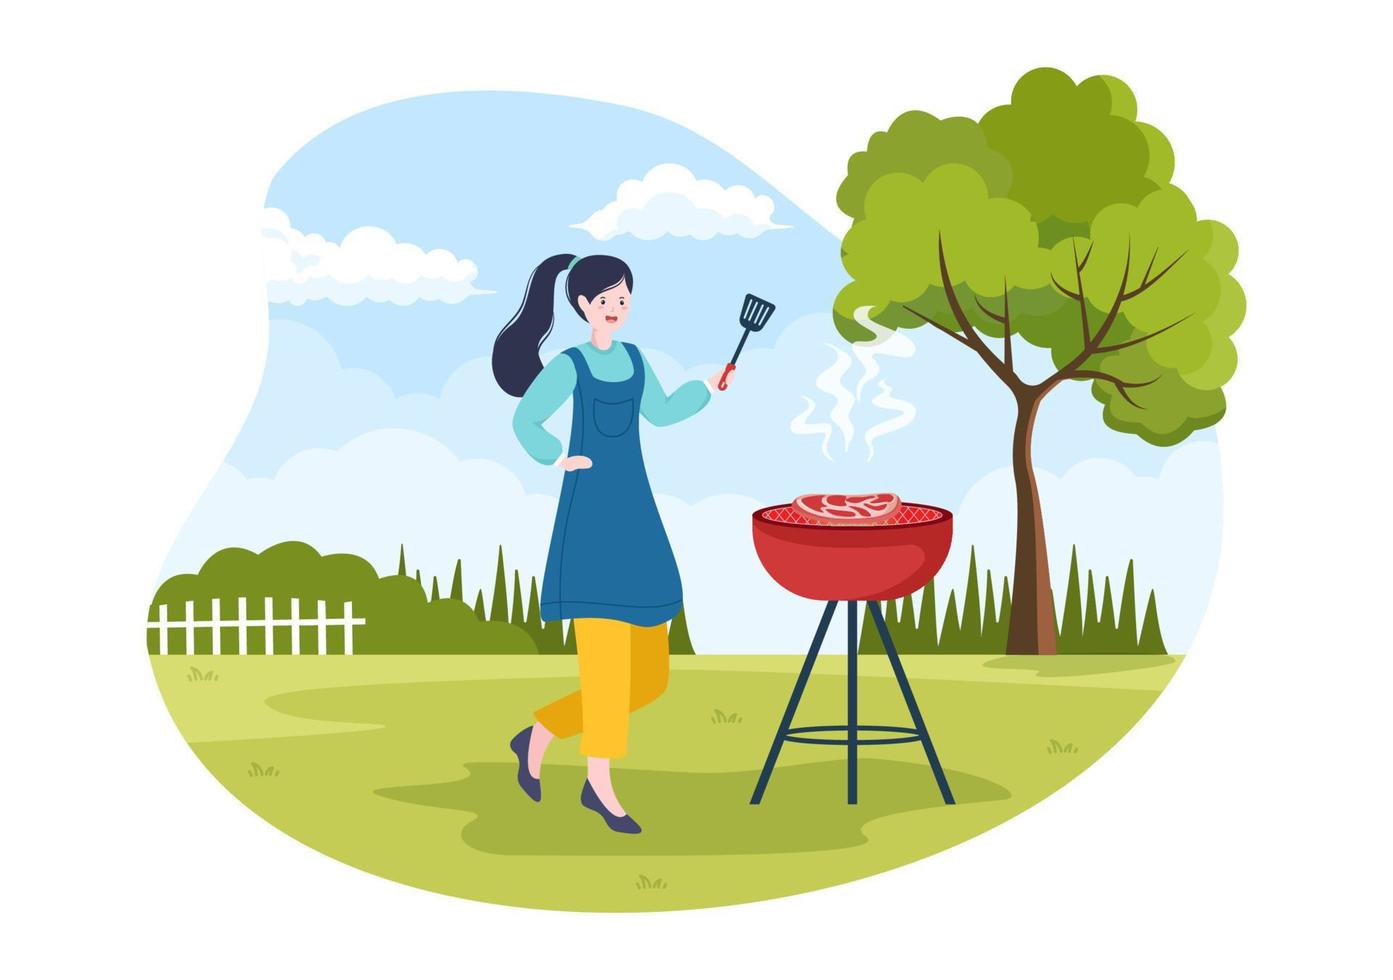 barbecue ou barbecue avec steaks sur grill, assiettes, saucisses, poulet, légumes et personnes en pique-nique ou fête dans le parc en illustration de dessin animé plat vecteur